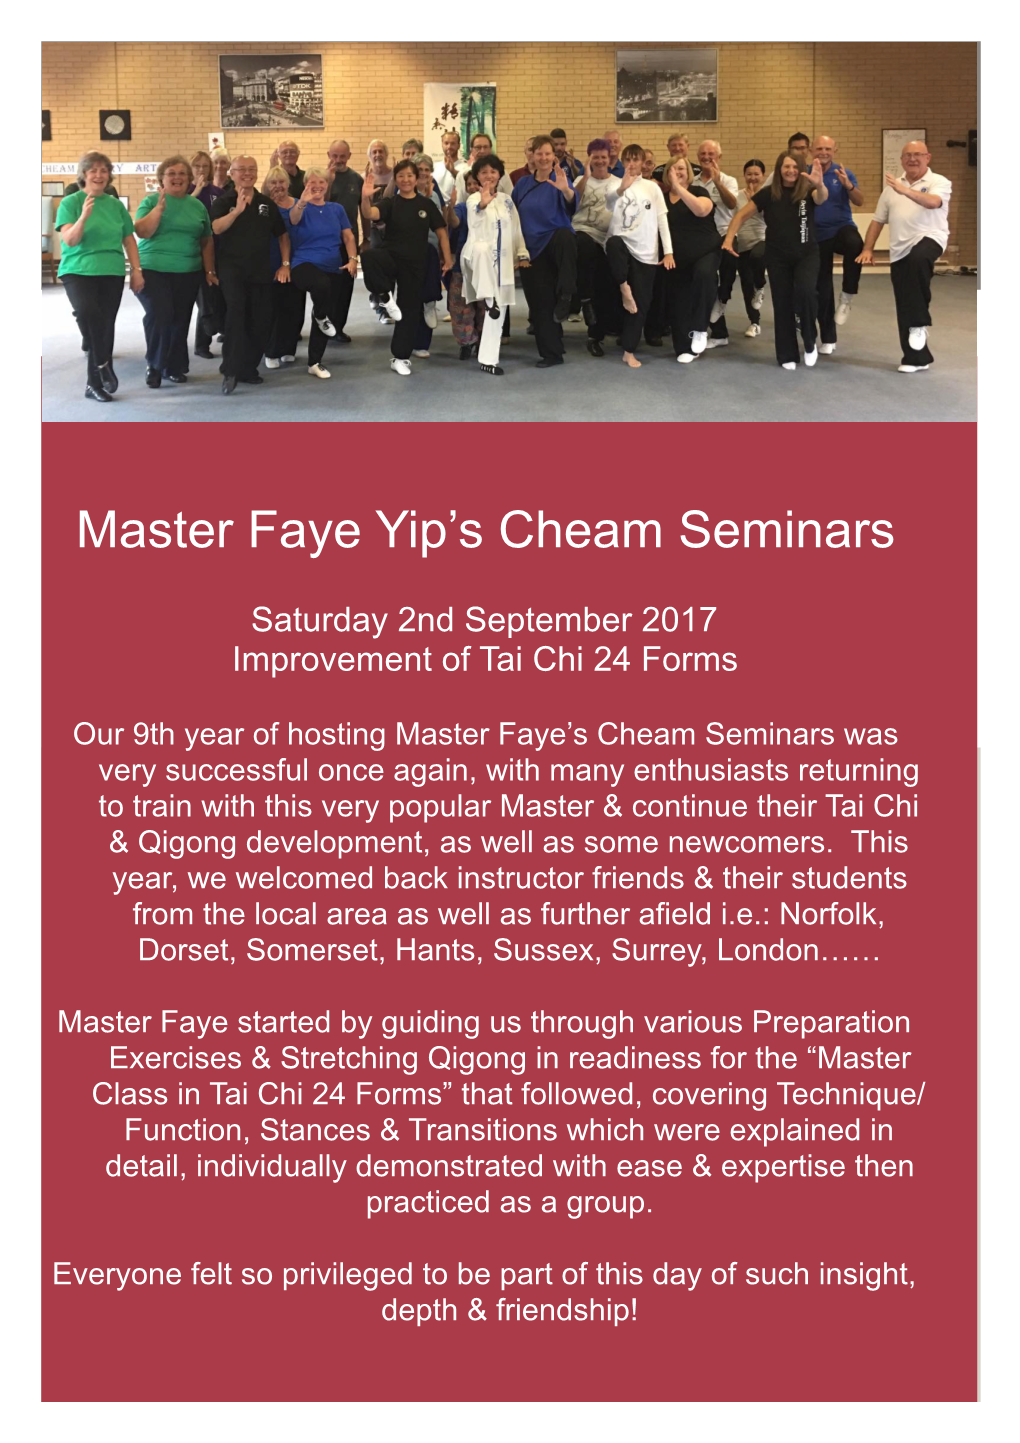 Faye's Cheam Seminars 2017